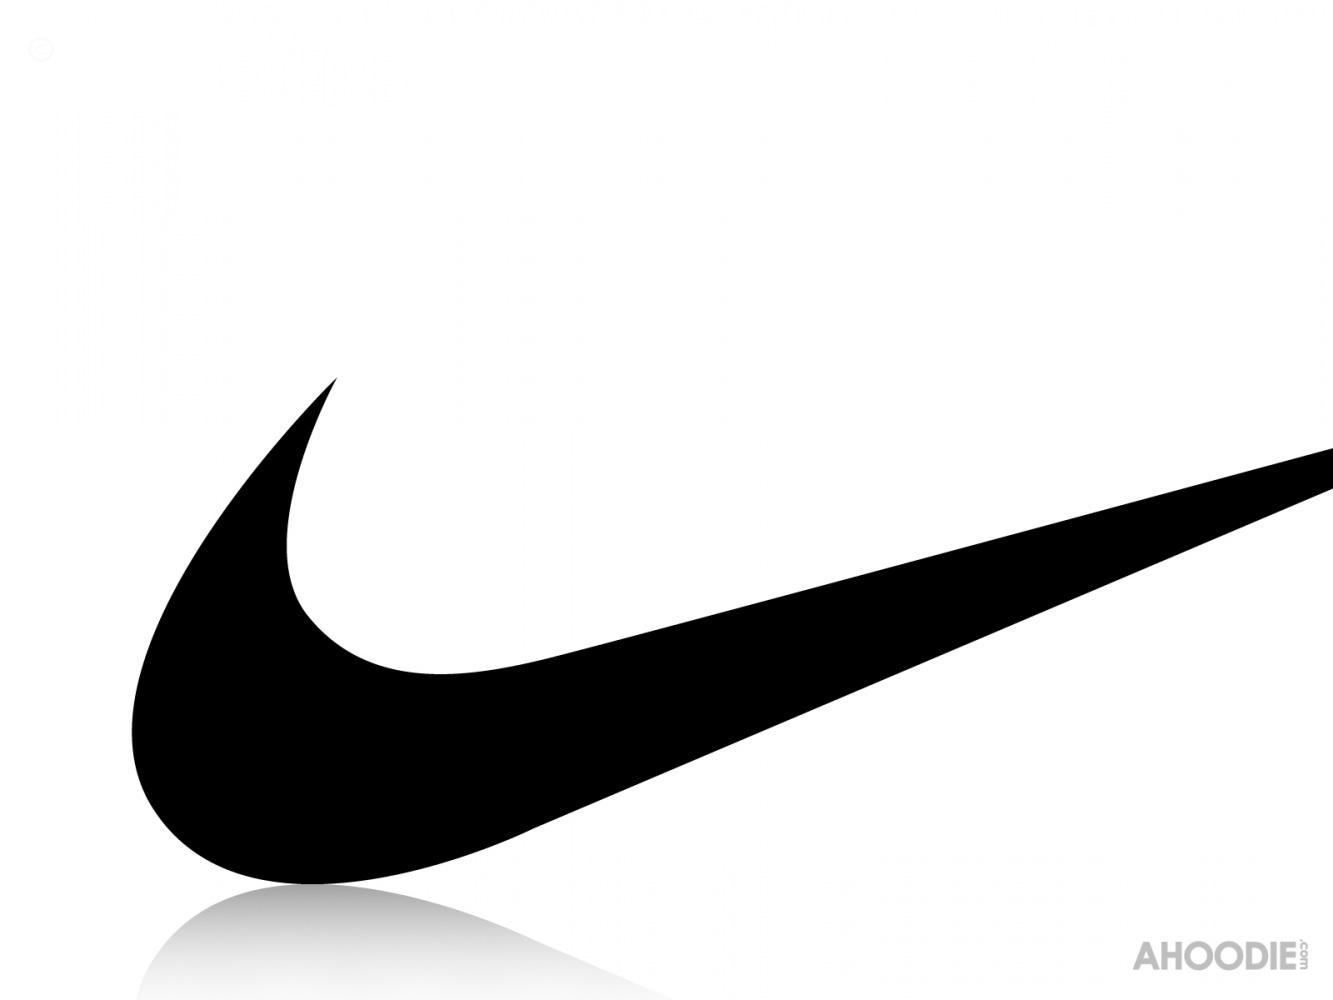 Nike Swoosh Wallpaper